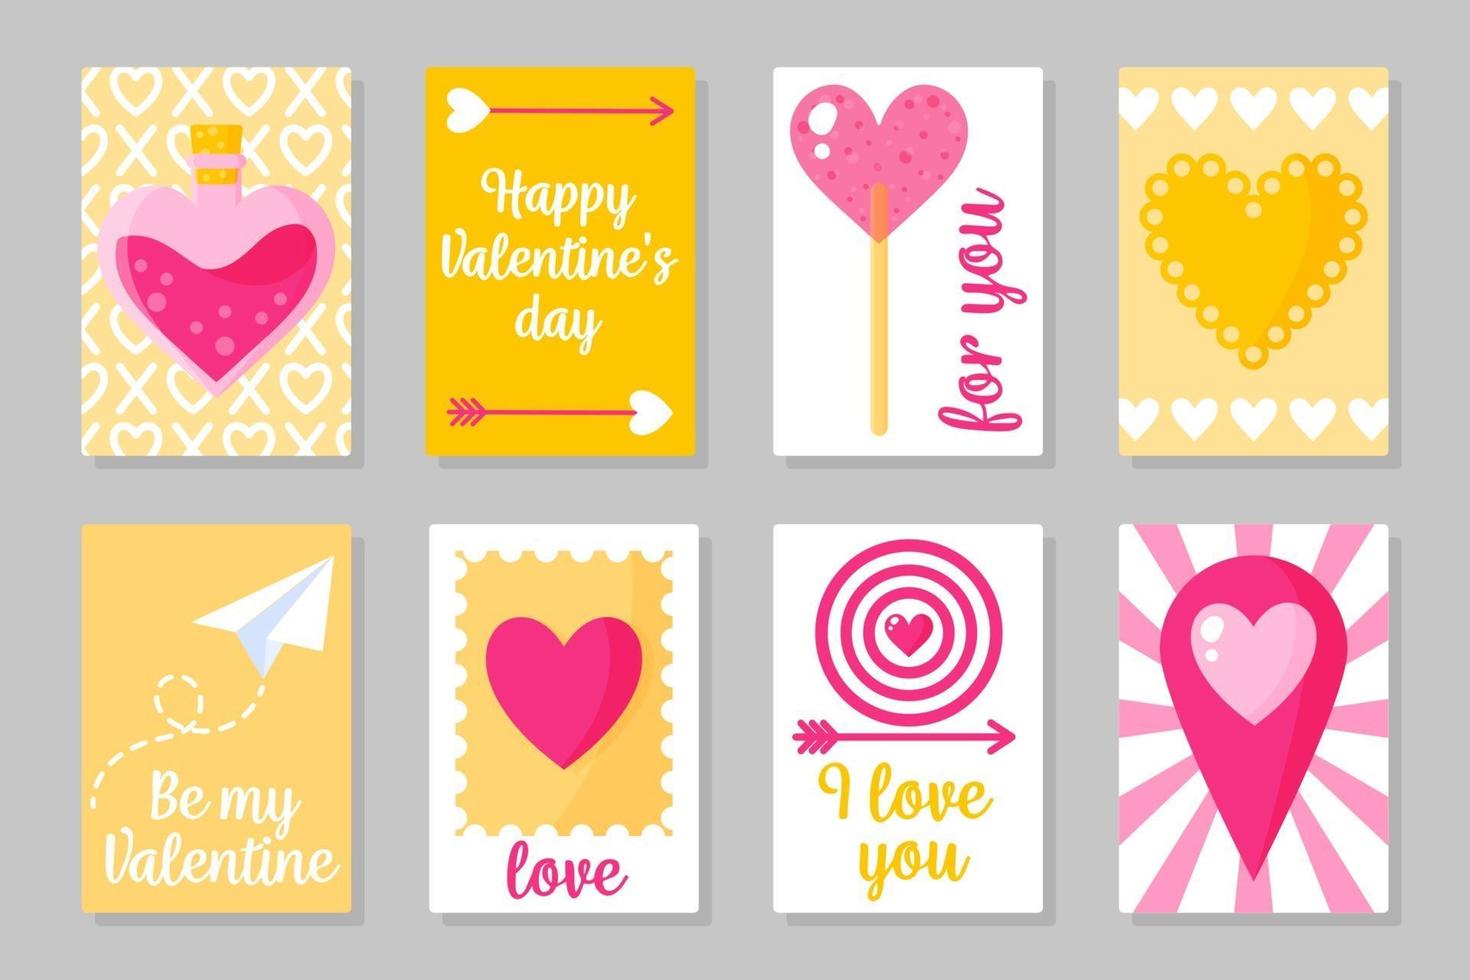 set roze, wit en geel gekleurde kaarten voor Valentijnsdag of bruiloft. vector plat geïsoleerd ontwerp